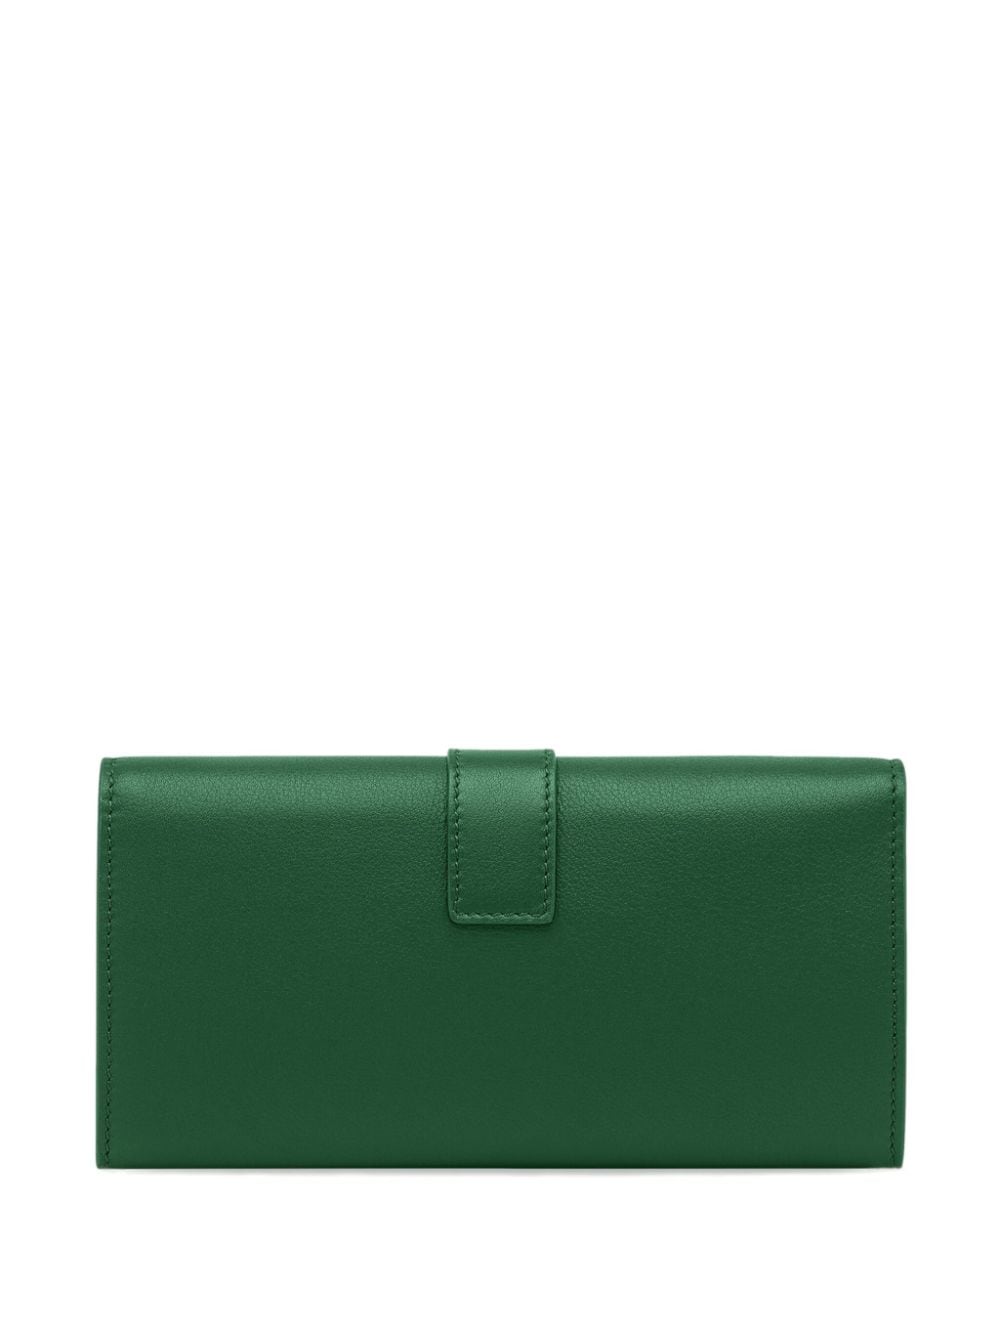 Ferragamo Hug leather chain wallet - Groen